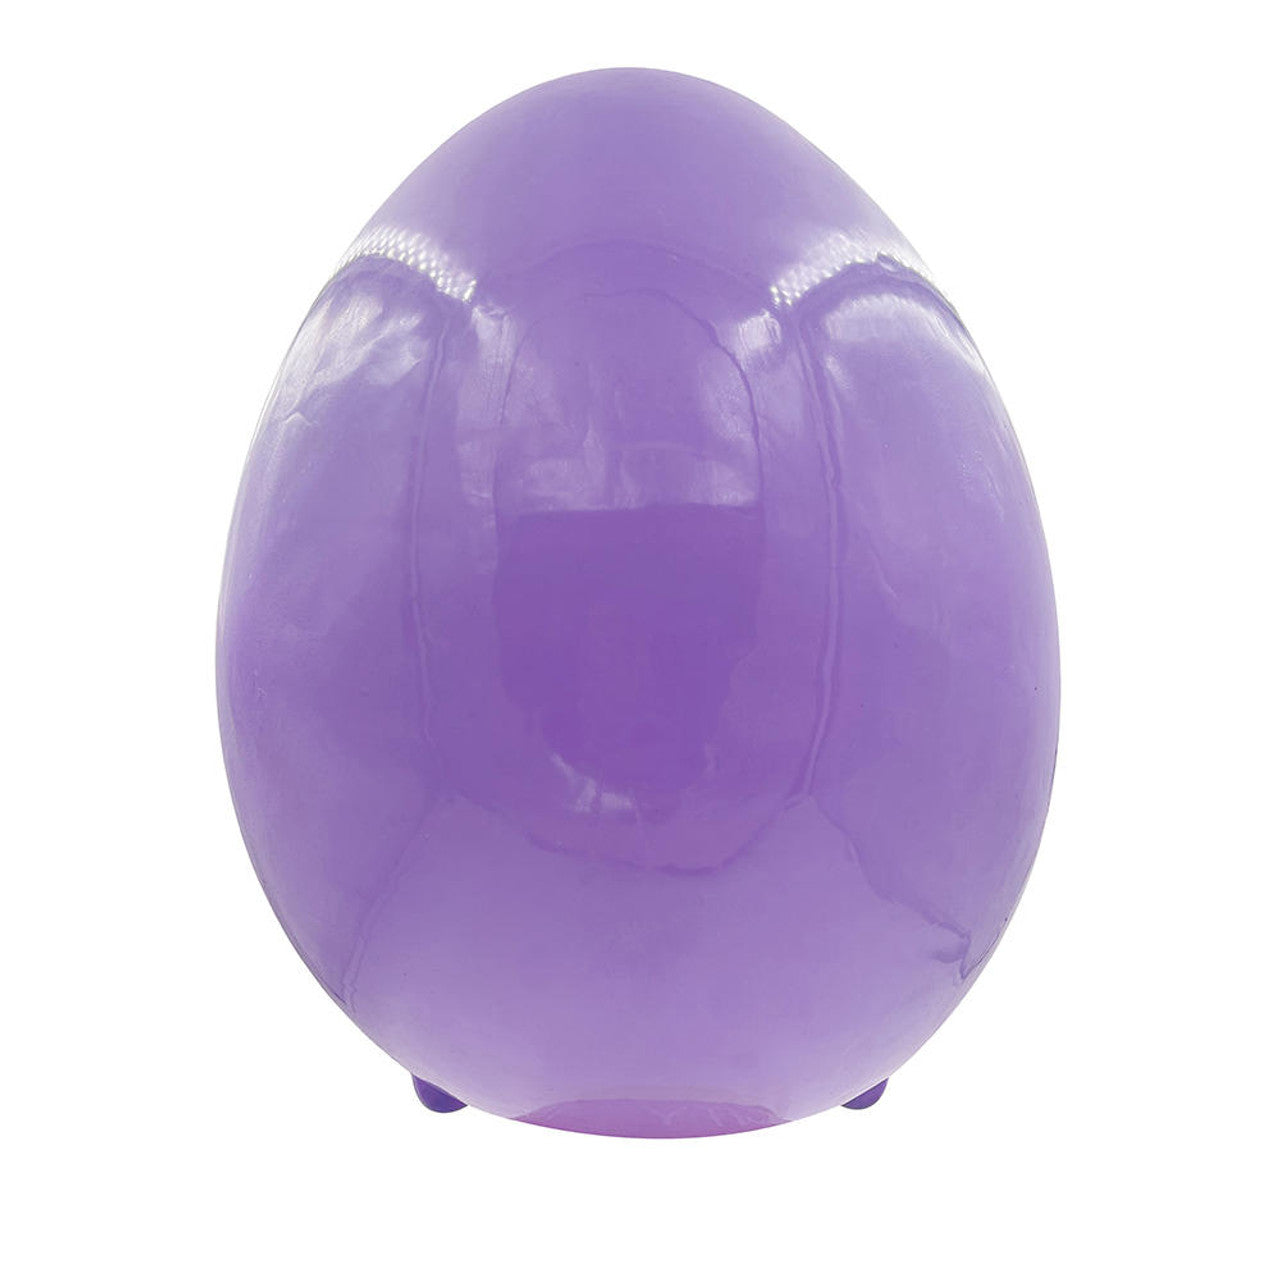 Holiball Inflatable Egg 18"